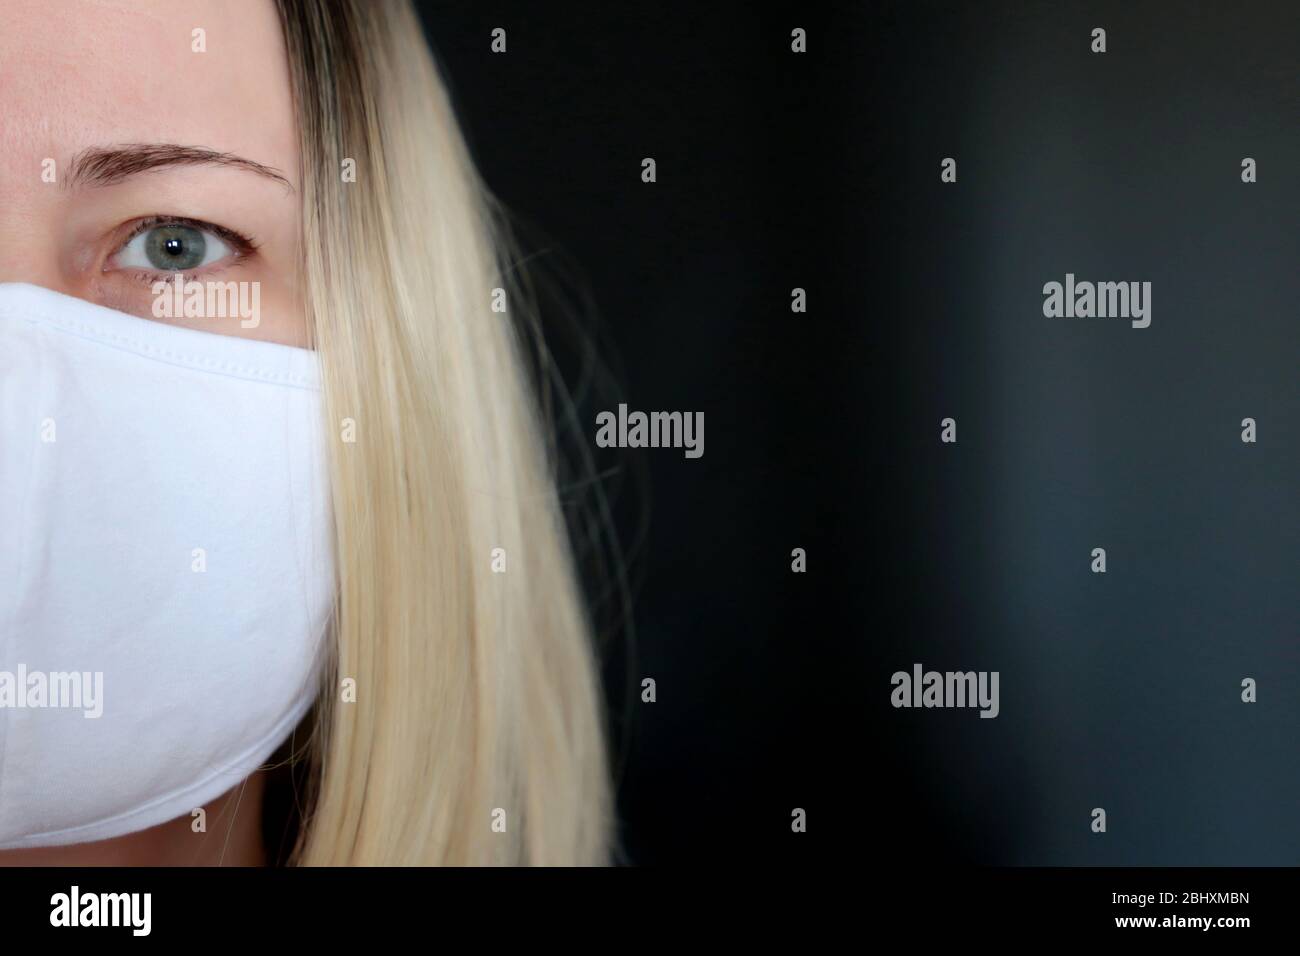 Coronavirus Schutz, blonde Frau in medizinischer Maske auf dunklem Hintergrund, ein halbes Gesichtsporträt. Konzept der Quarantäne während der Covid-19-Pandemie Stockfoto